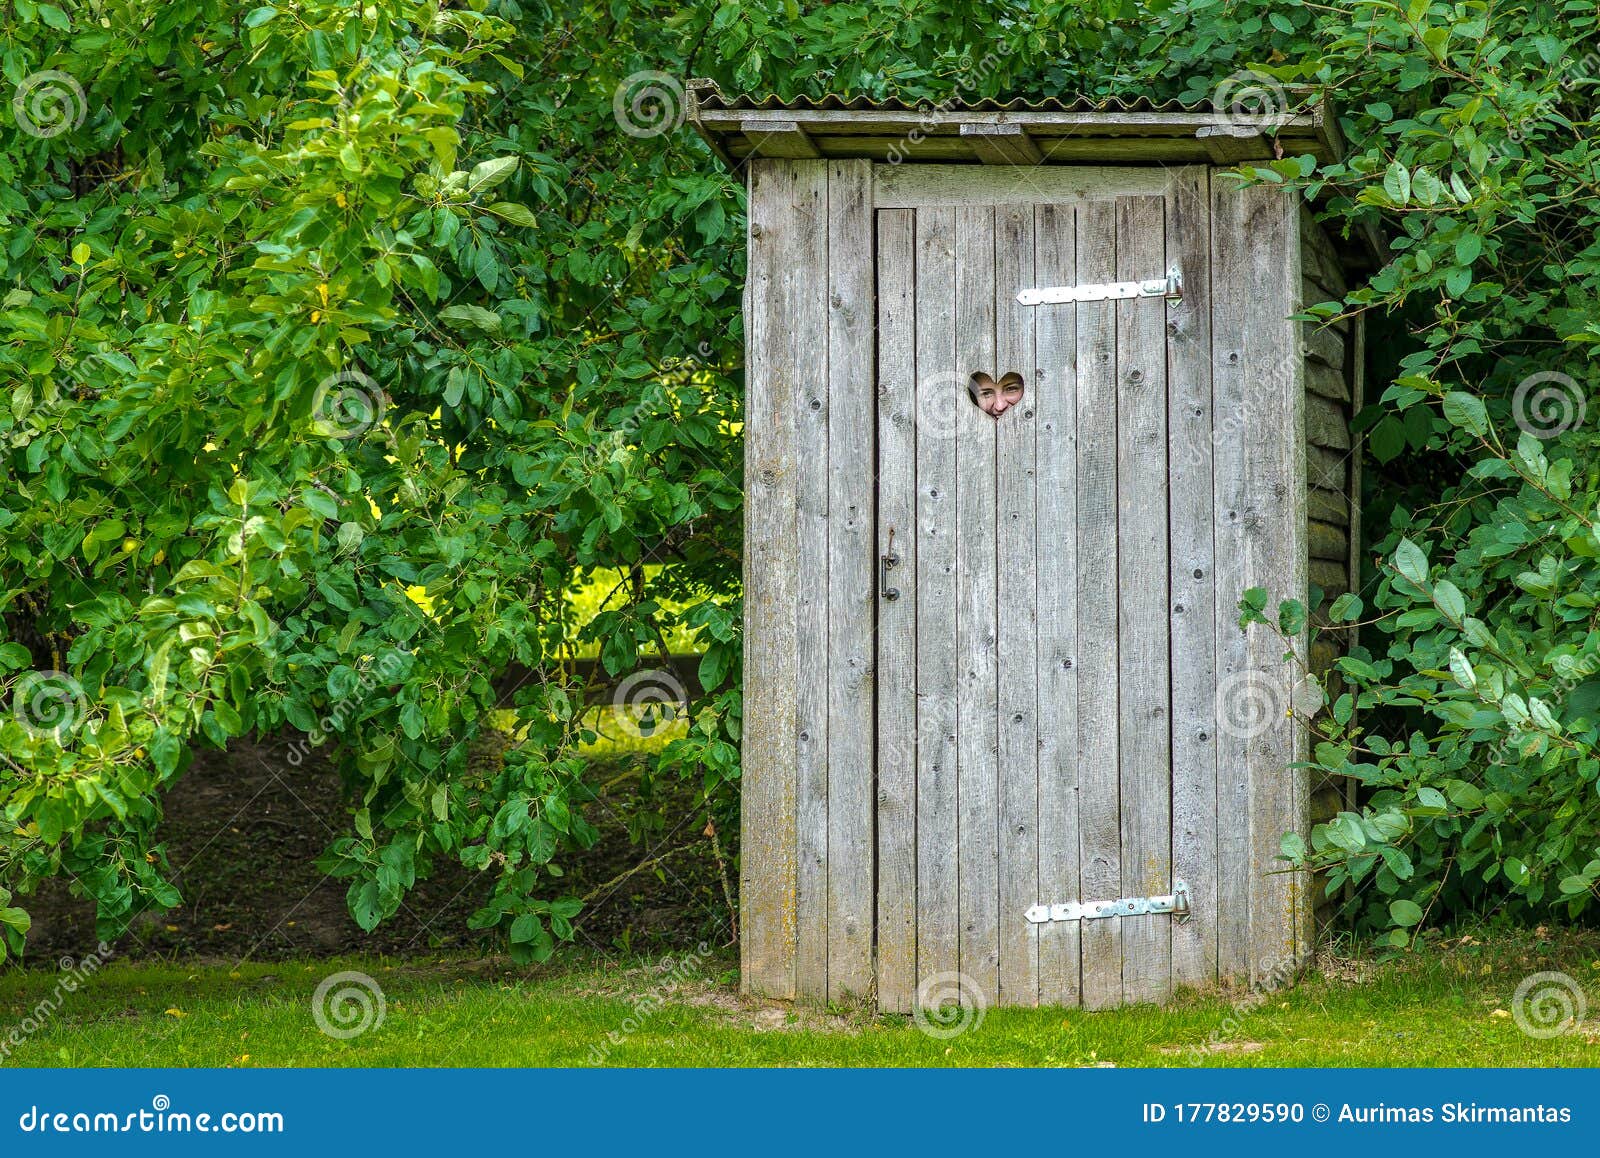 Toilette Extérieure Dans La Nature Avec Le Coeur Photo stock - Image du  extérieur, nature: 177829590